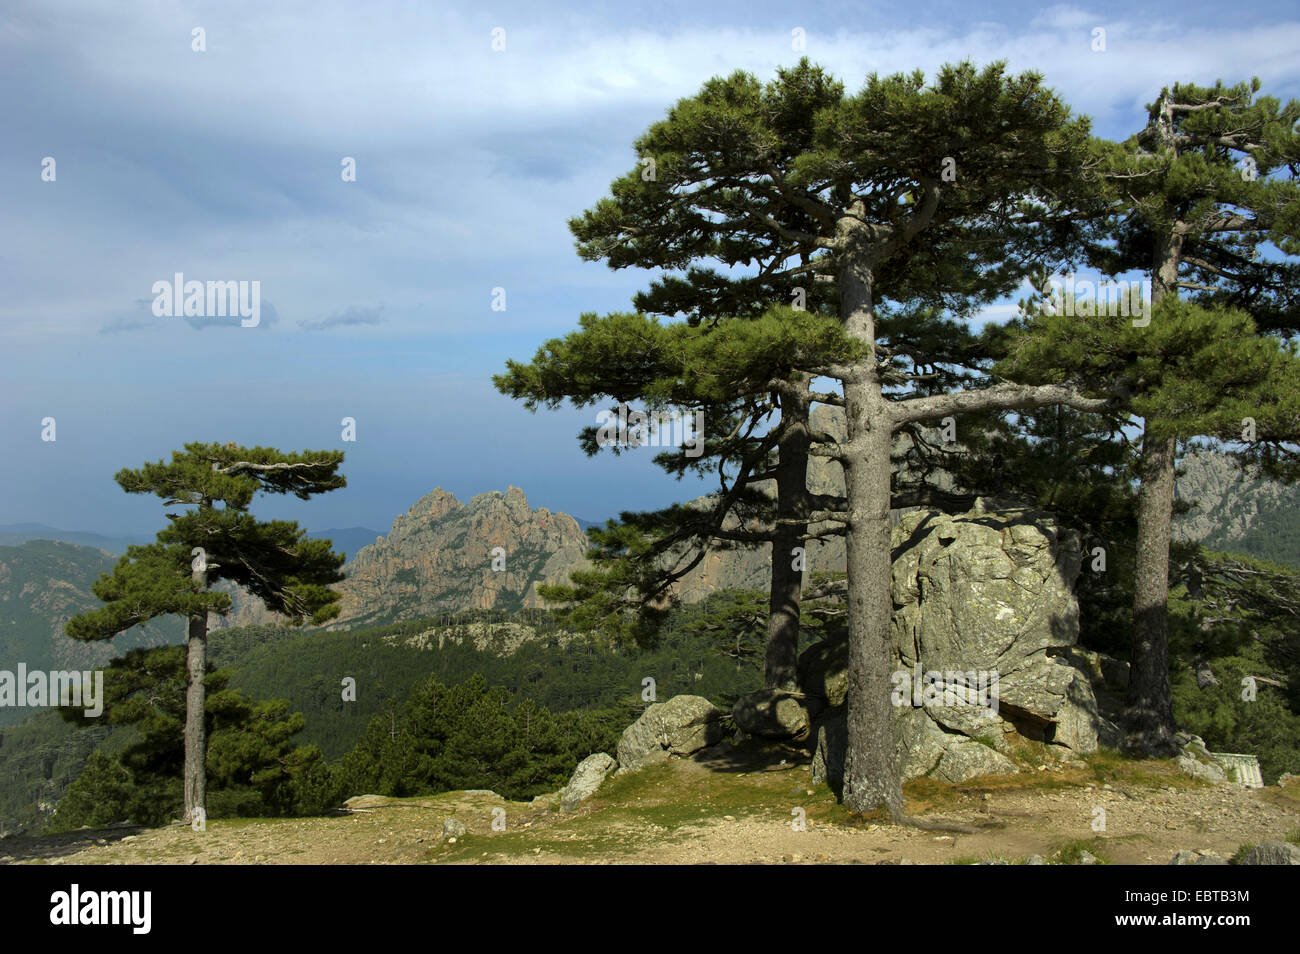 Le pin noir d'Europe, mélèze, Pin noir, pin laricio (Pinus nigra), au Col de Bavella, France, Corse, Col de Bavella Banque D'Images